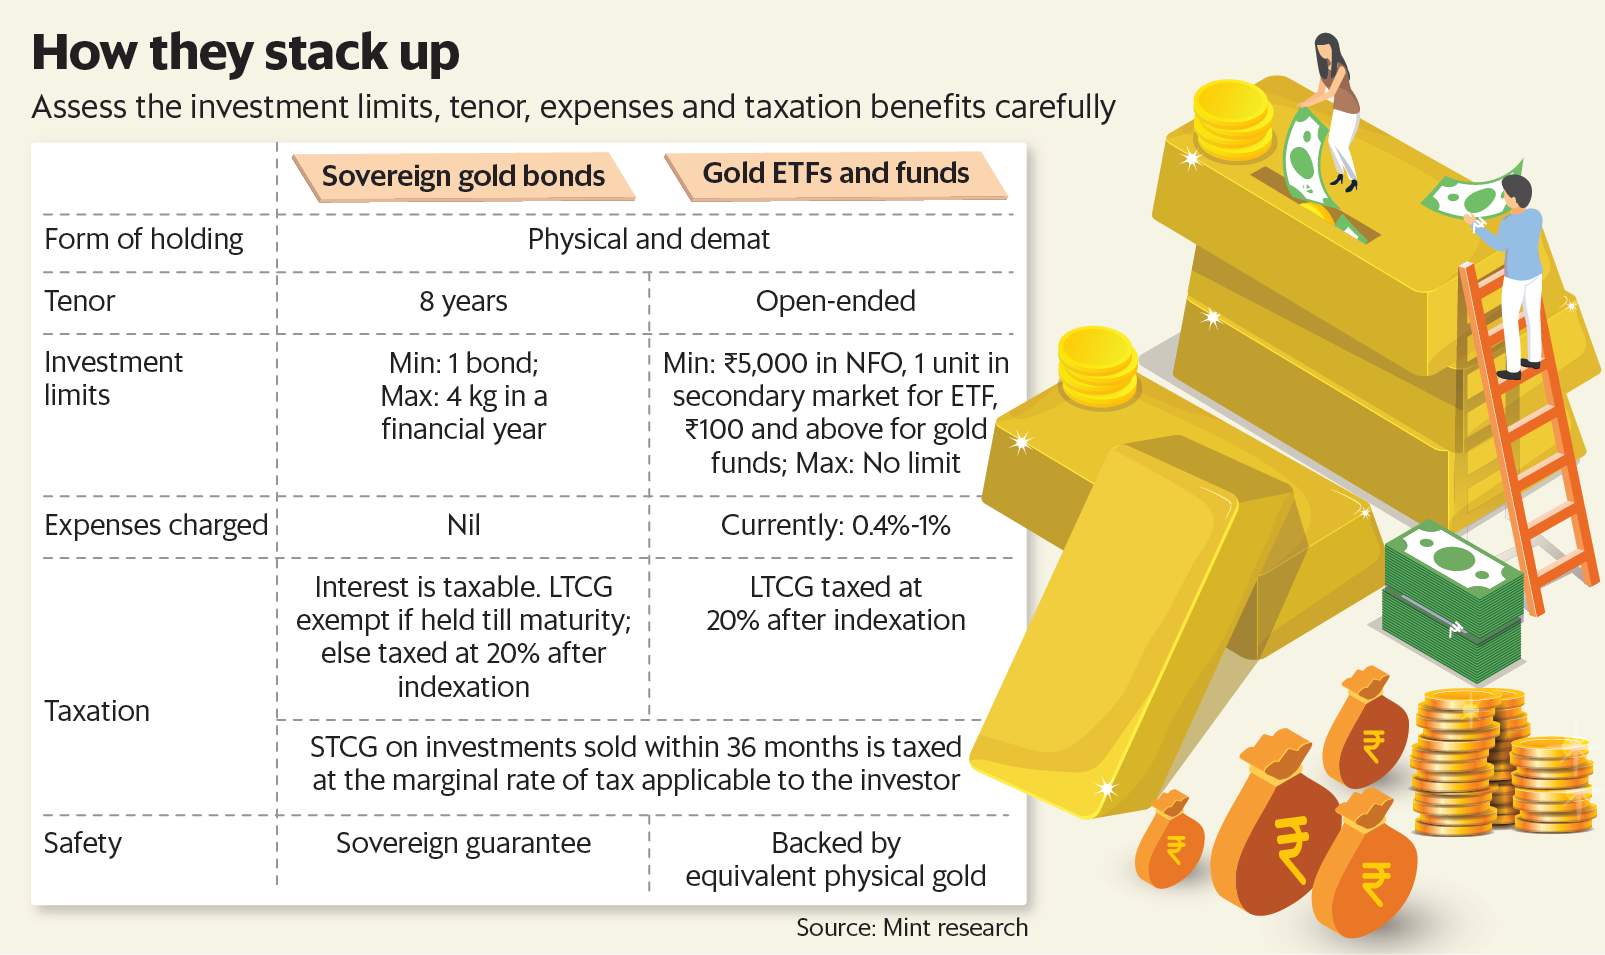 黃金ETF和基金是開放式計劃。沒有固定的期限，可以隨時贖回